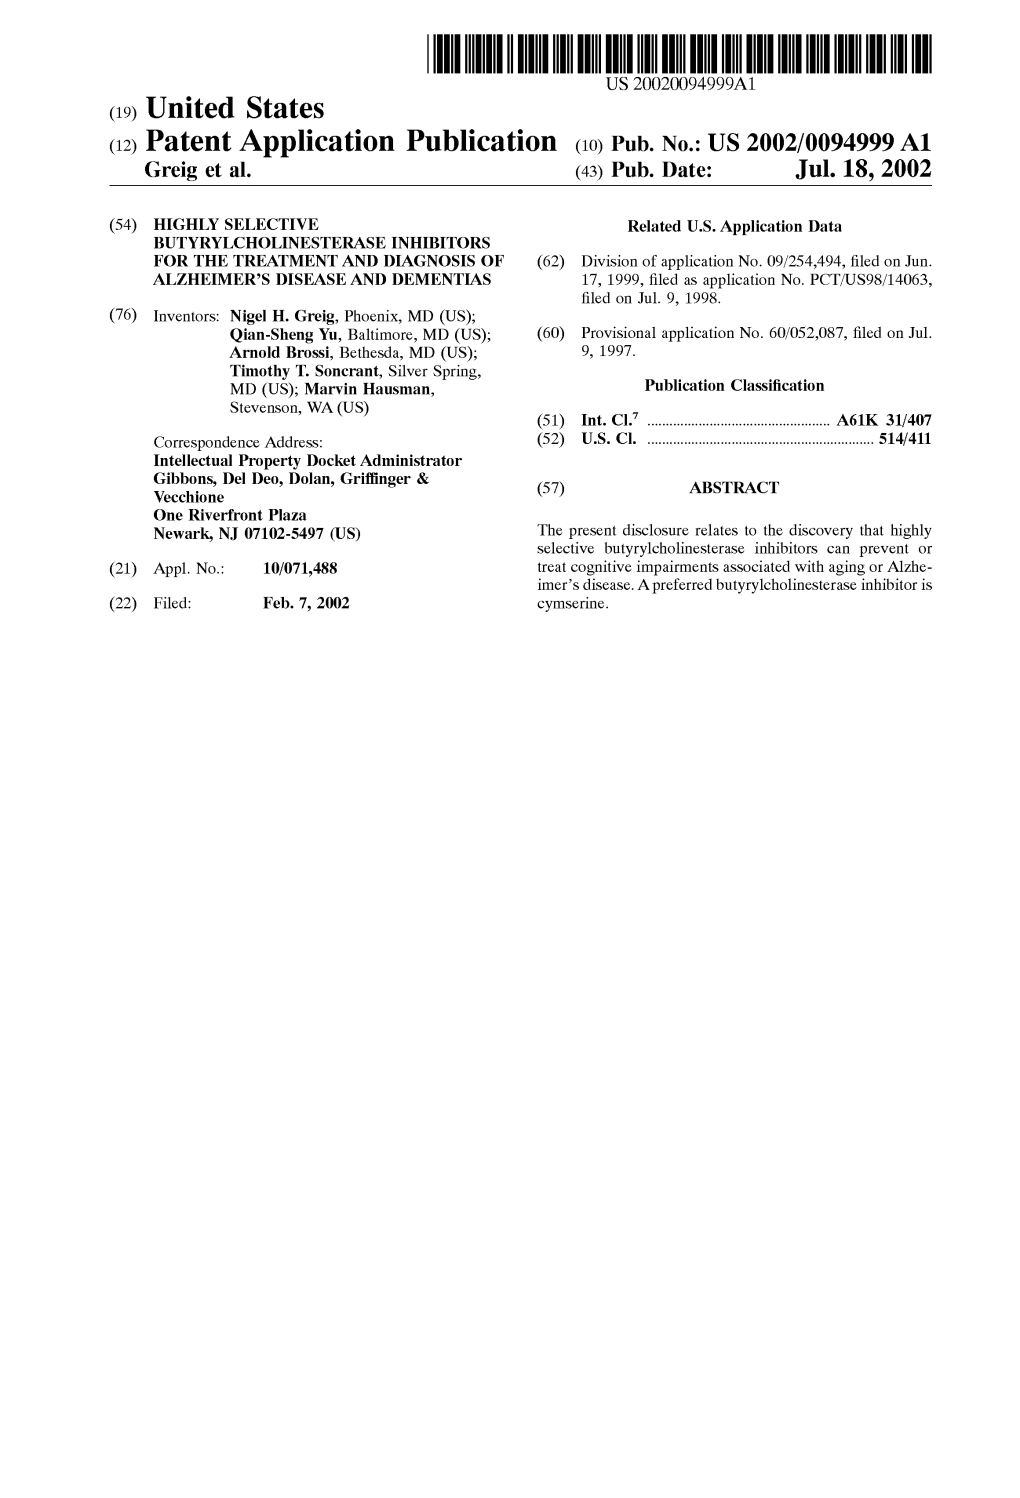 (12) Patent Application Publication (10) Pub. No.: US 2002/0094999 A1 Greig Et Al